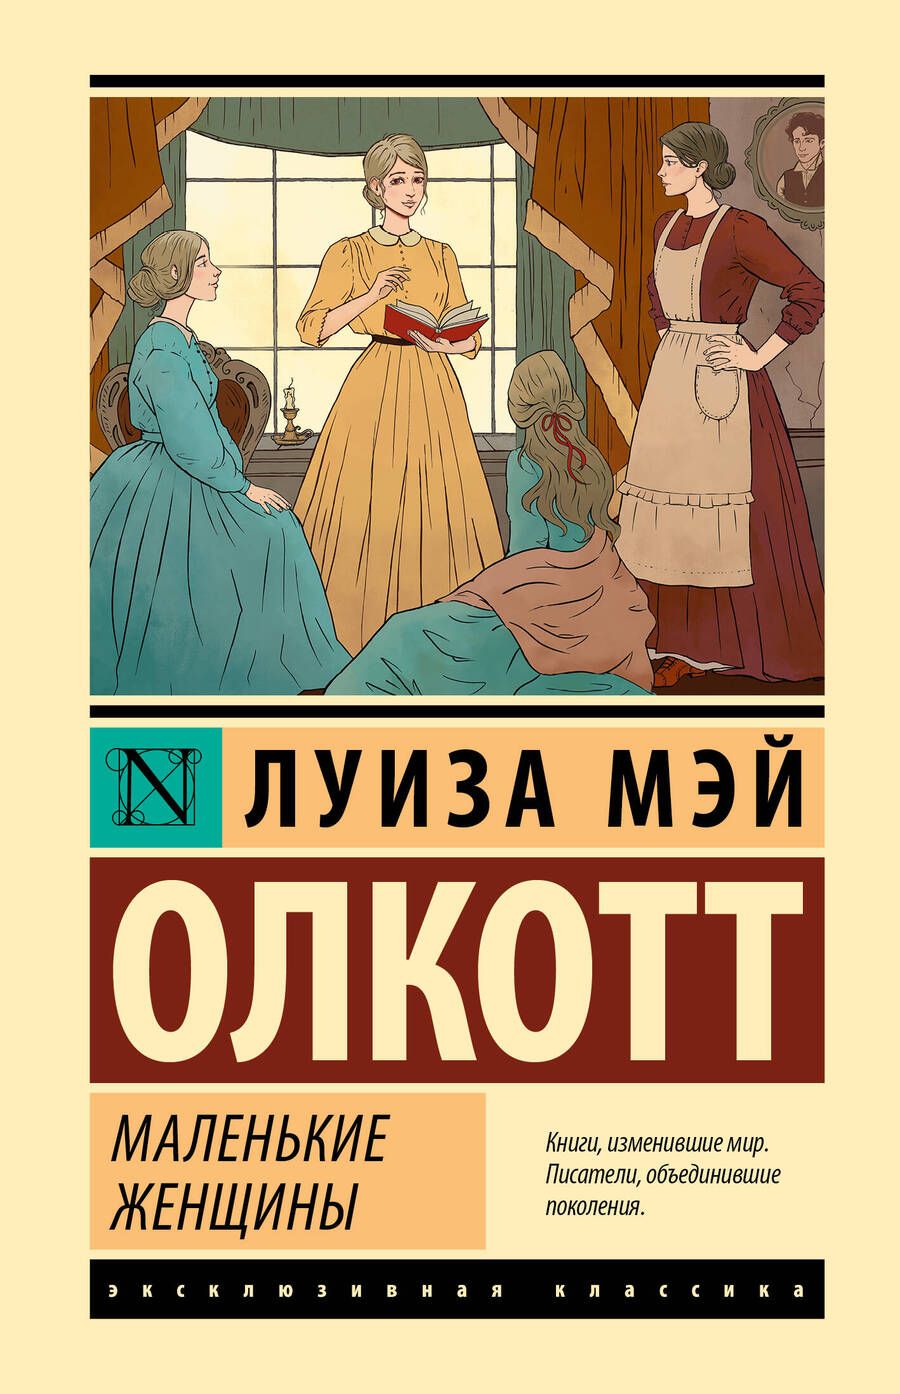 Обложка книги "Олкотт: Маленькие женщины"